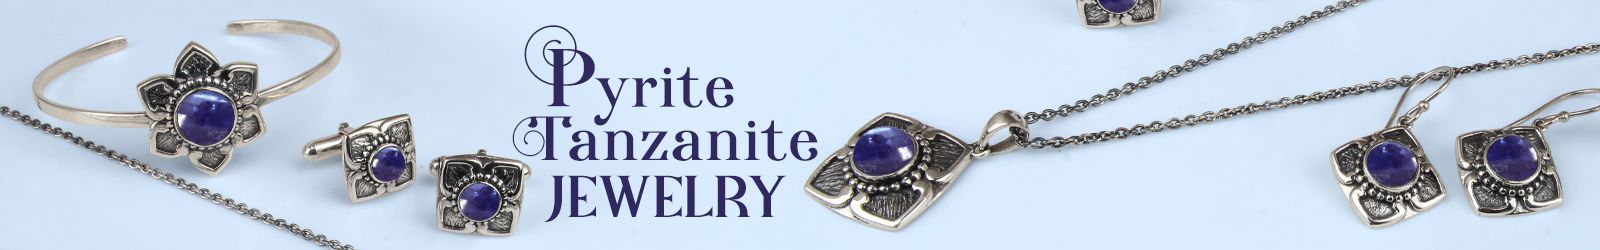 Silver Pyrite Tanzanite Color Jewelry Wholesale Supplier